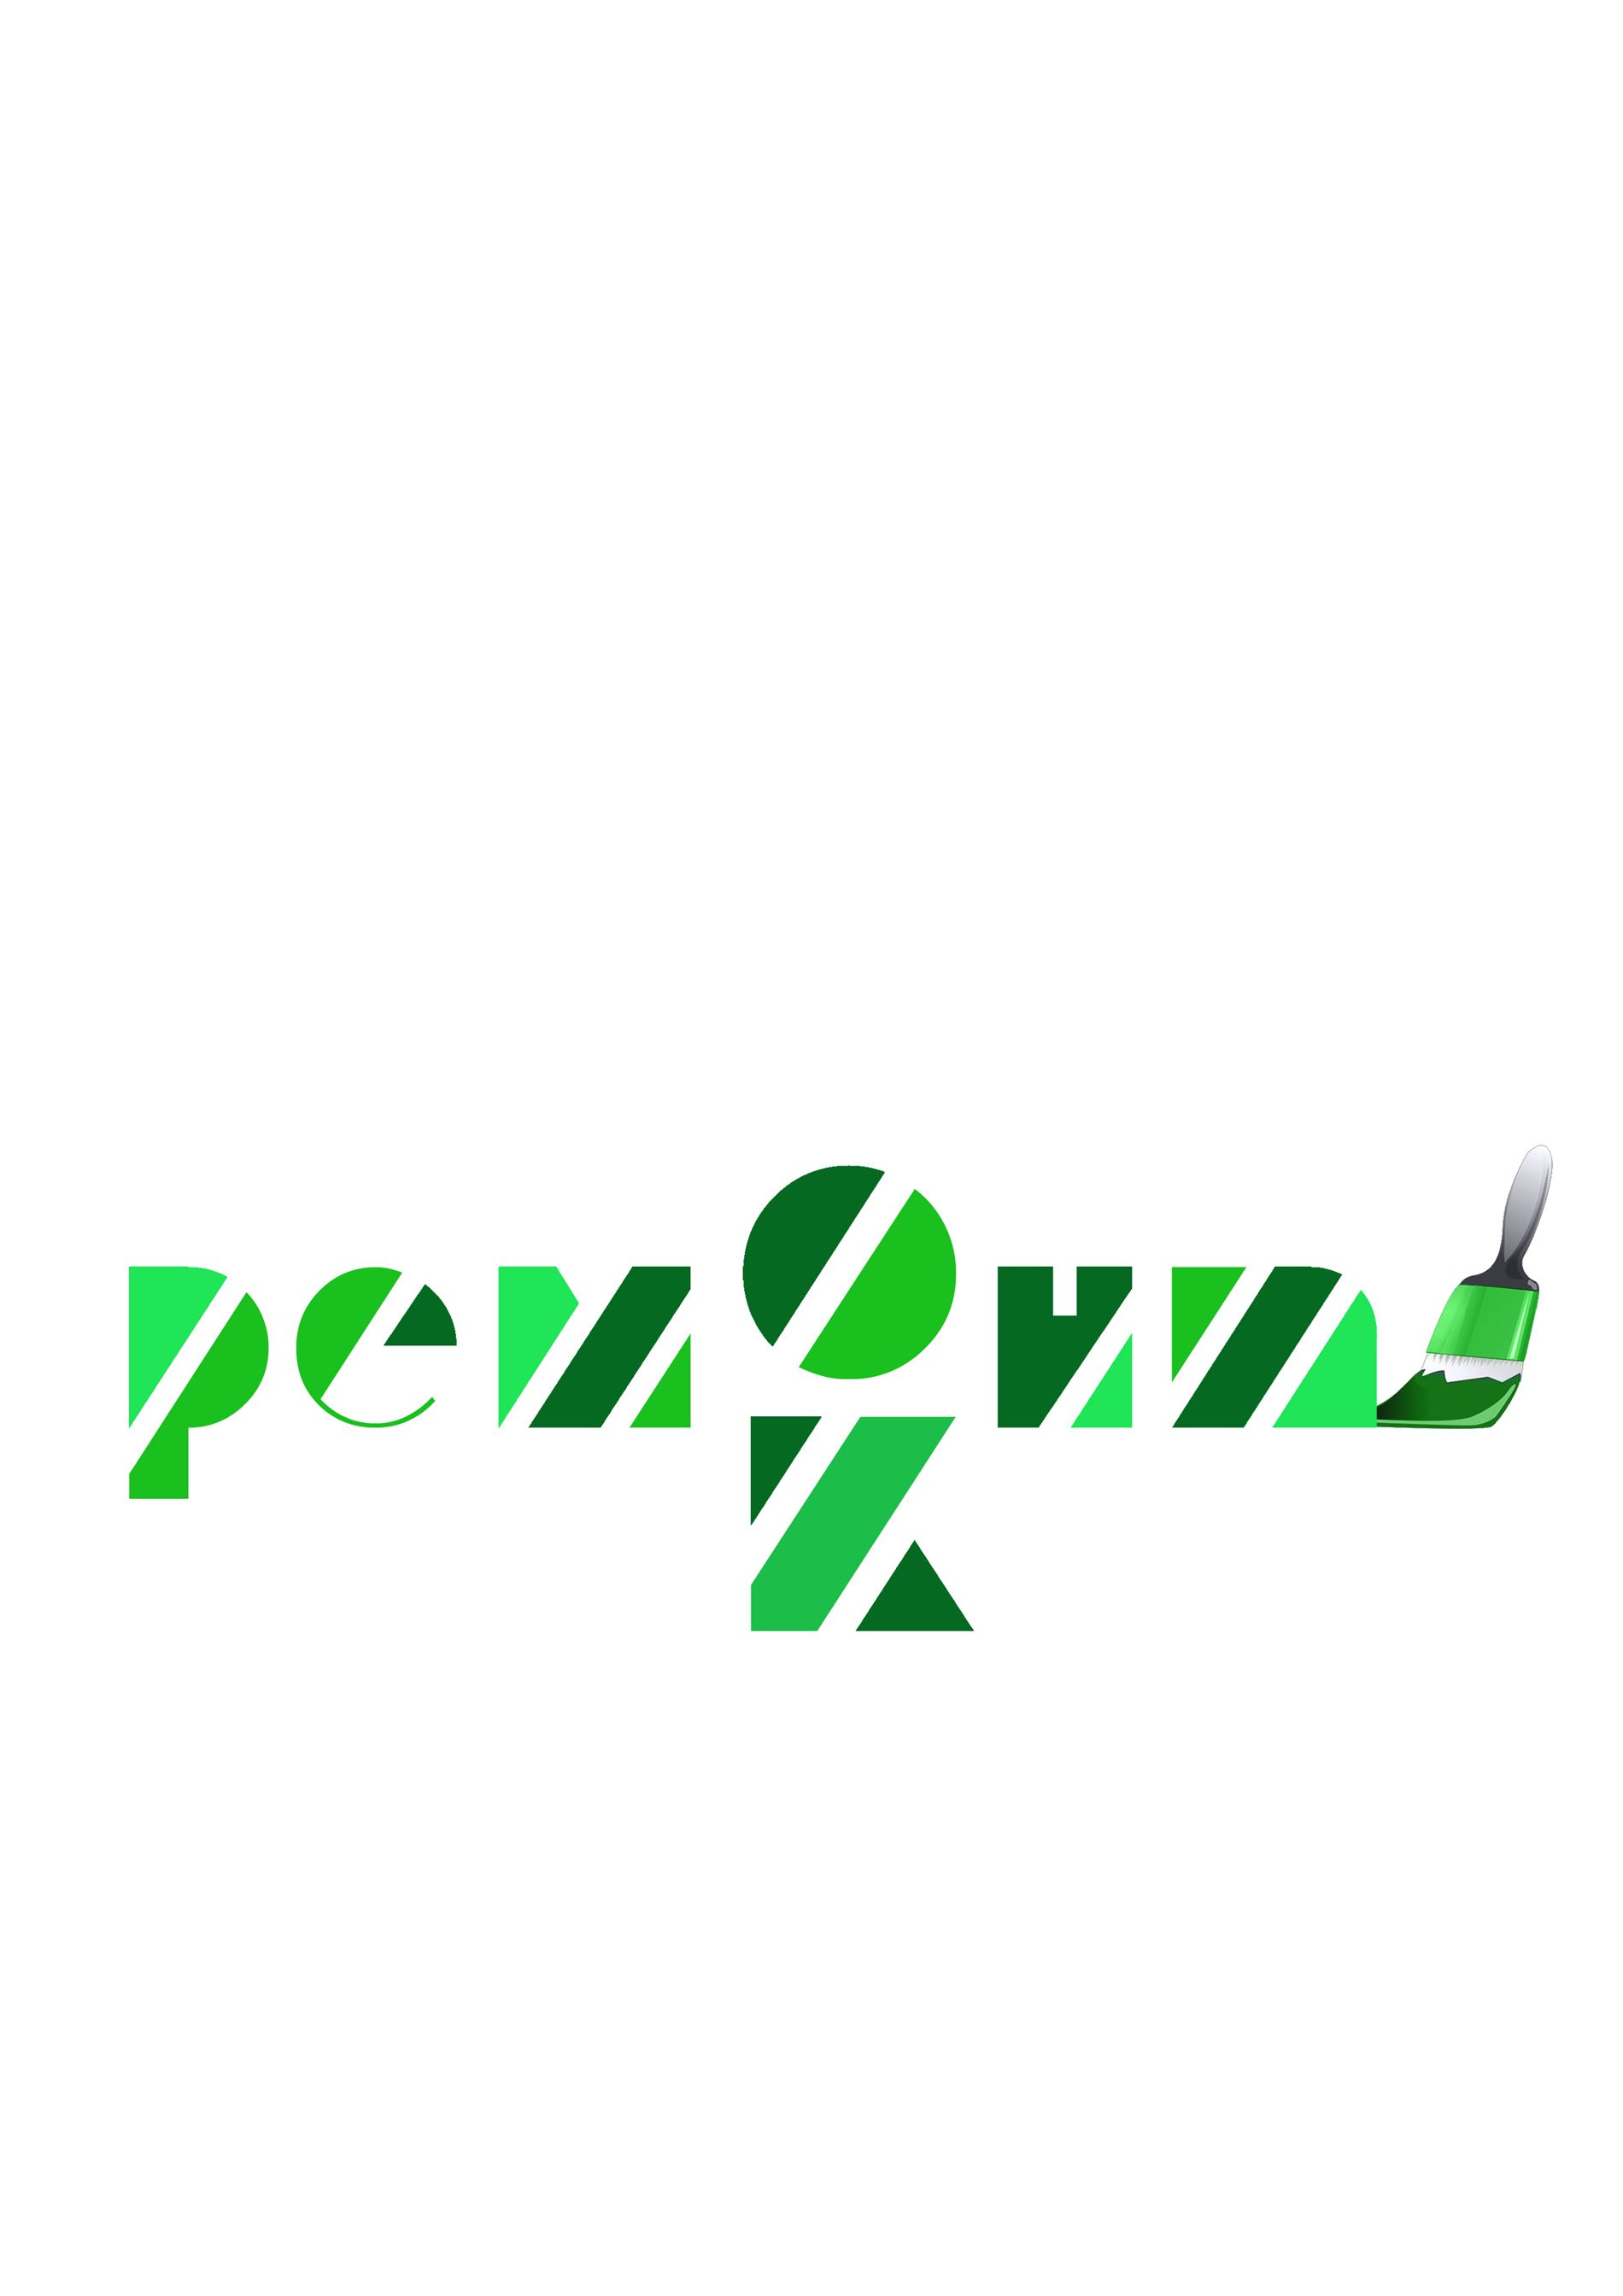 Логотип для ОК ремонт - дизайнер AlanMinskii